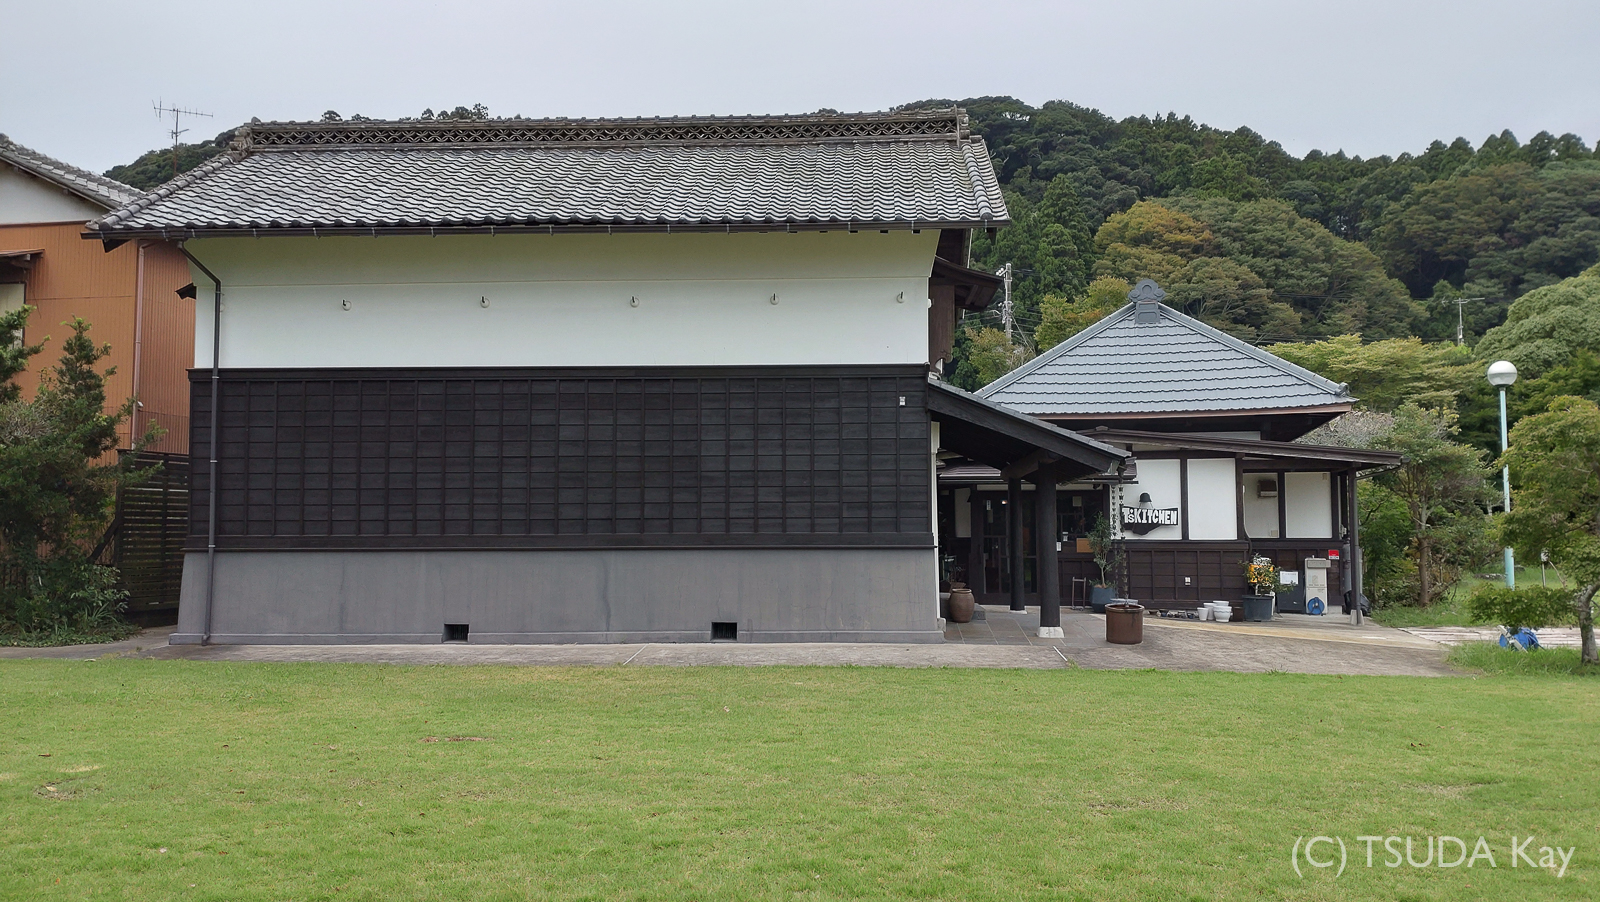 I visited ichinomiya 07